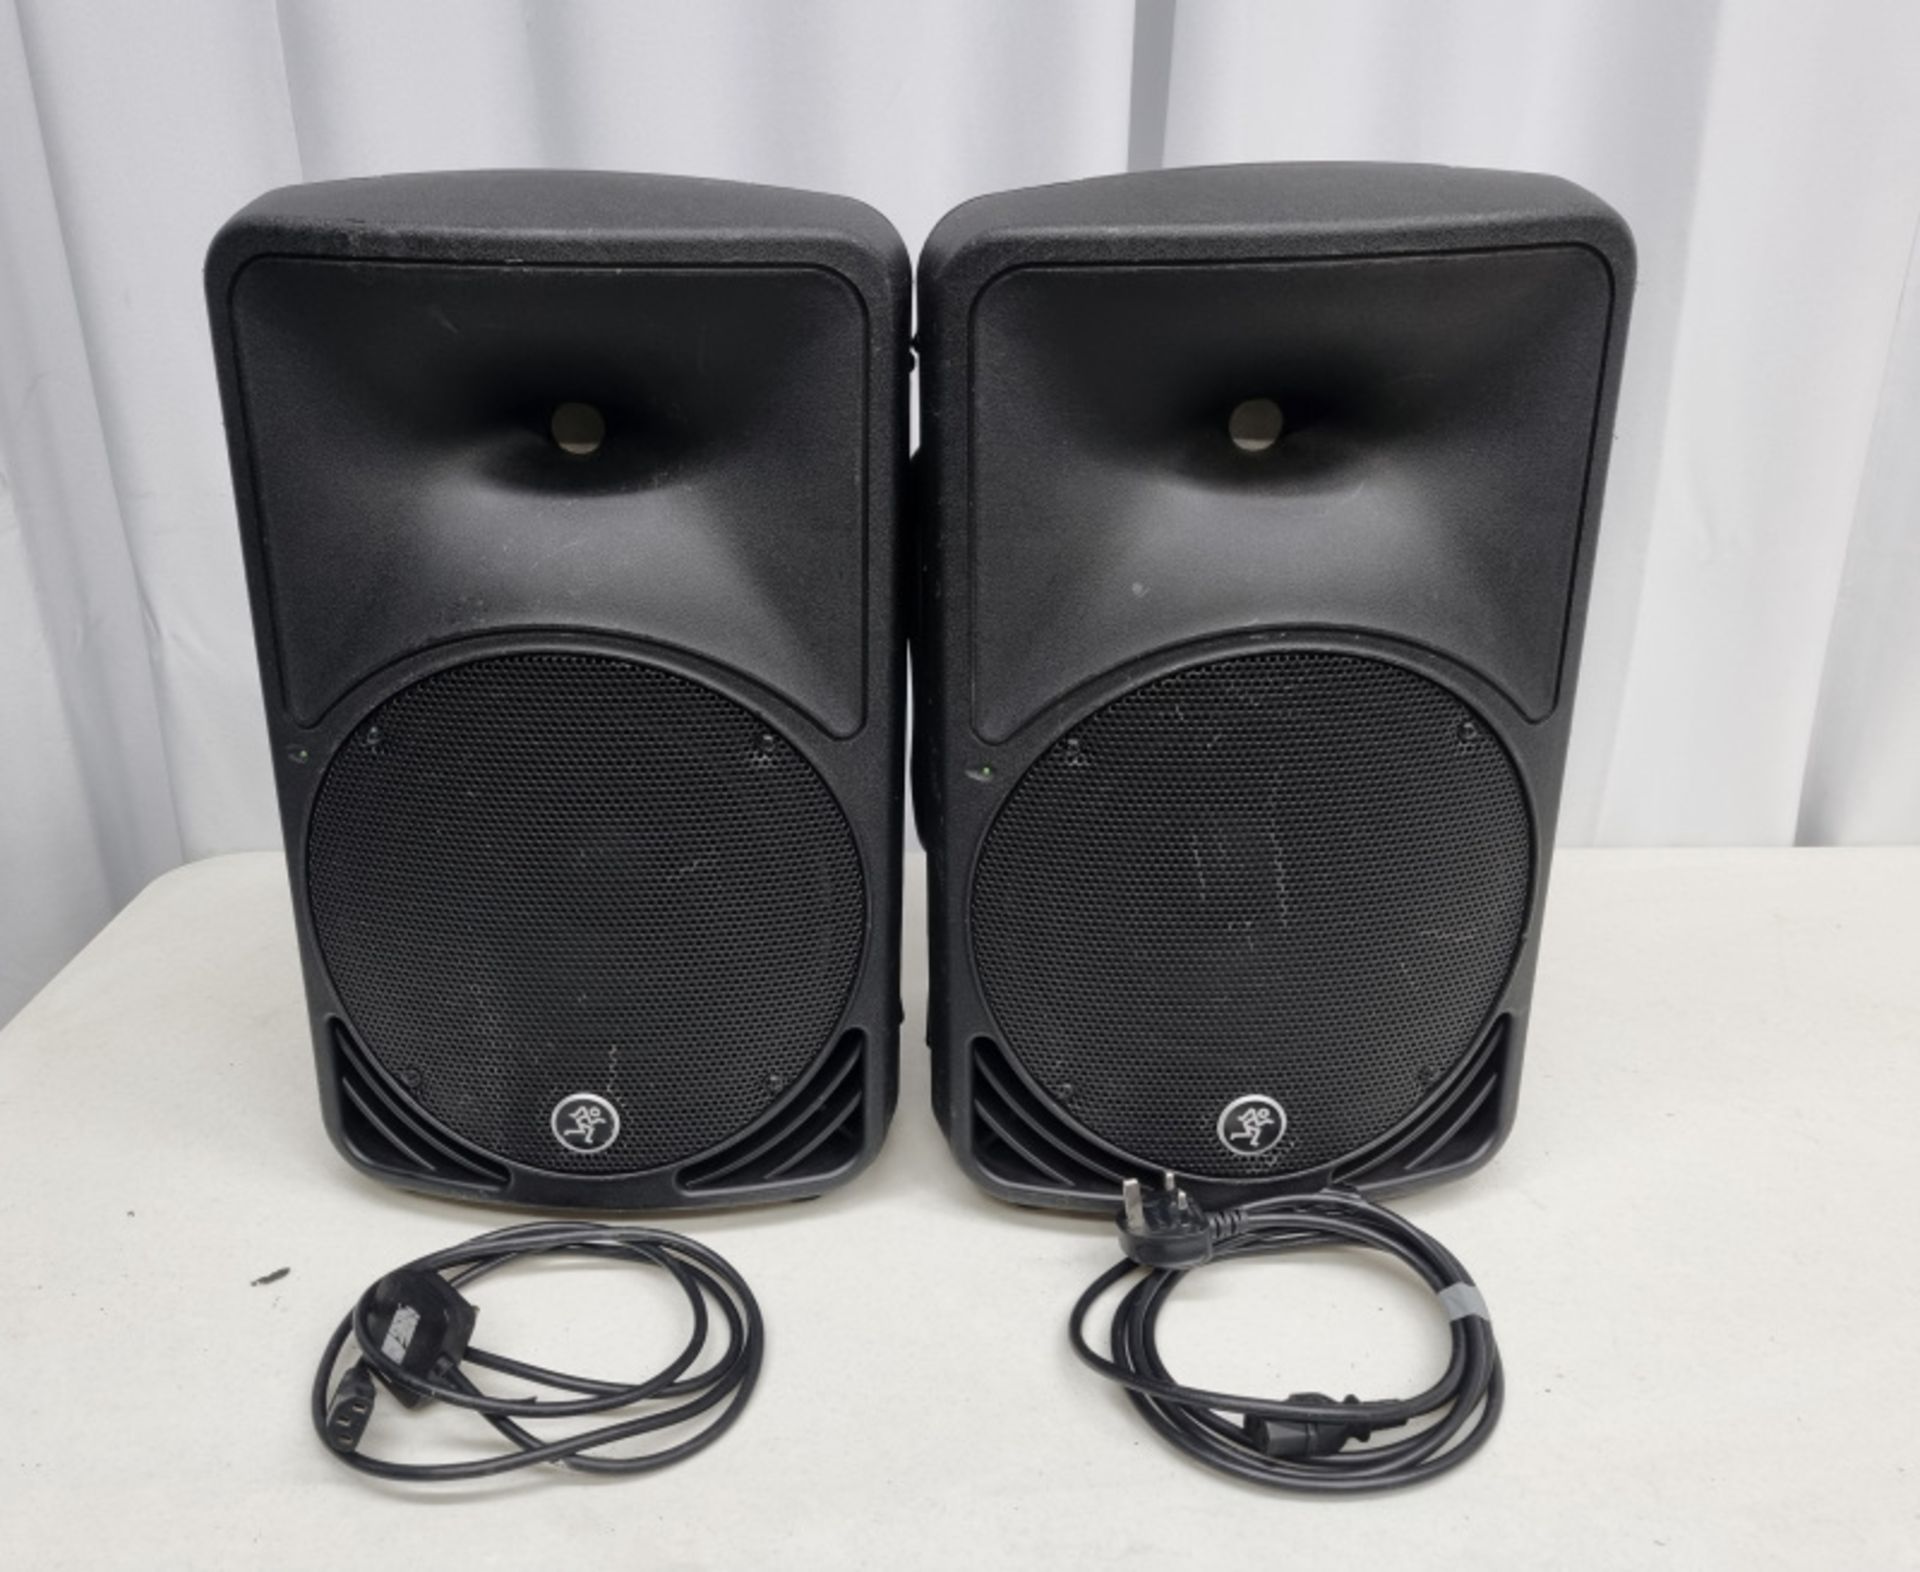 2 x Mackie SRM 350v3 speakers in flight case